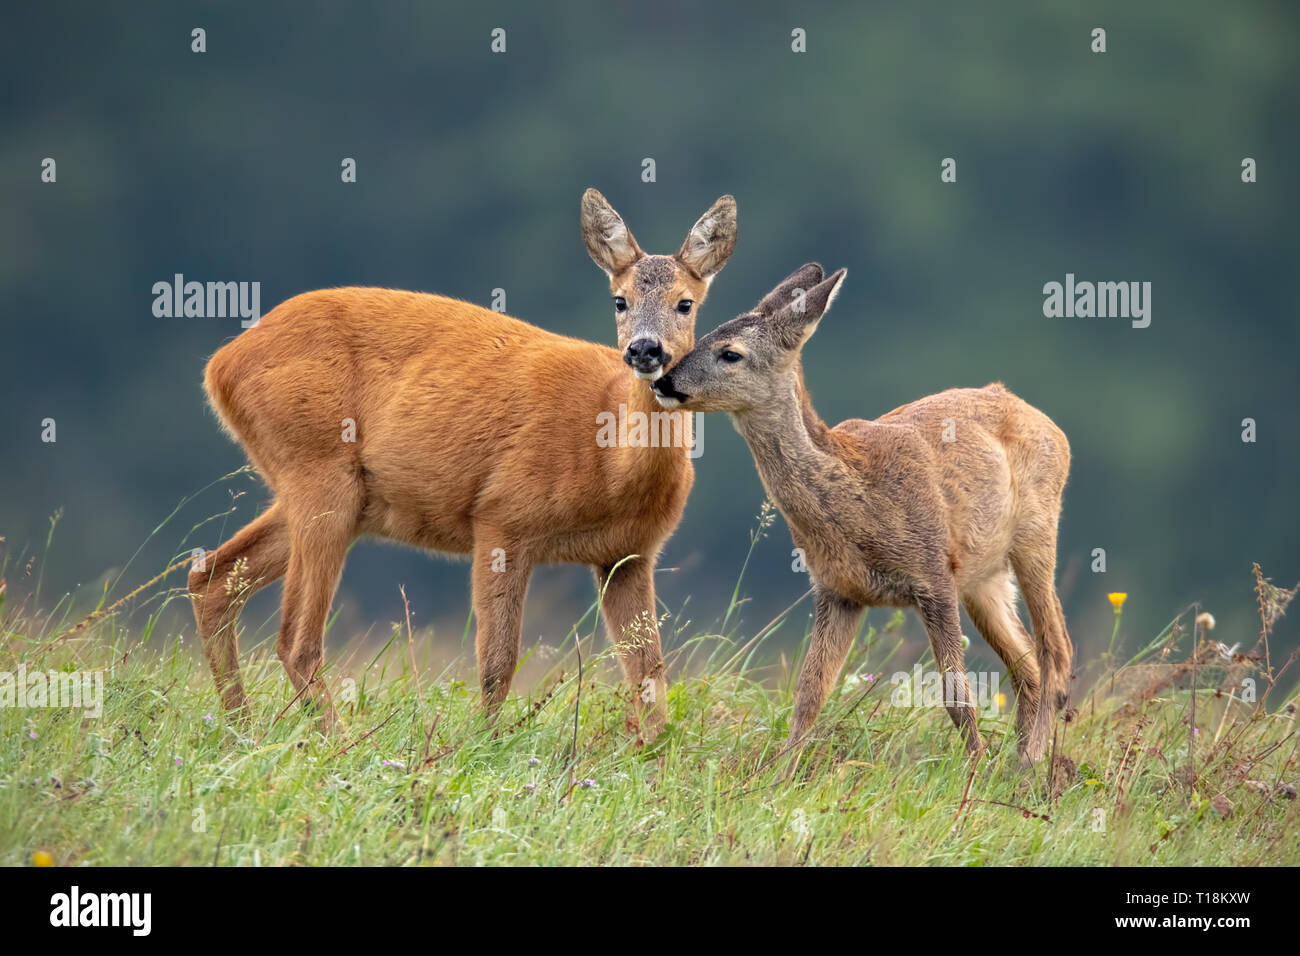 Momento de intimidad entre madre corzo doe y fawn Foto de stock